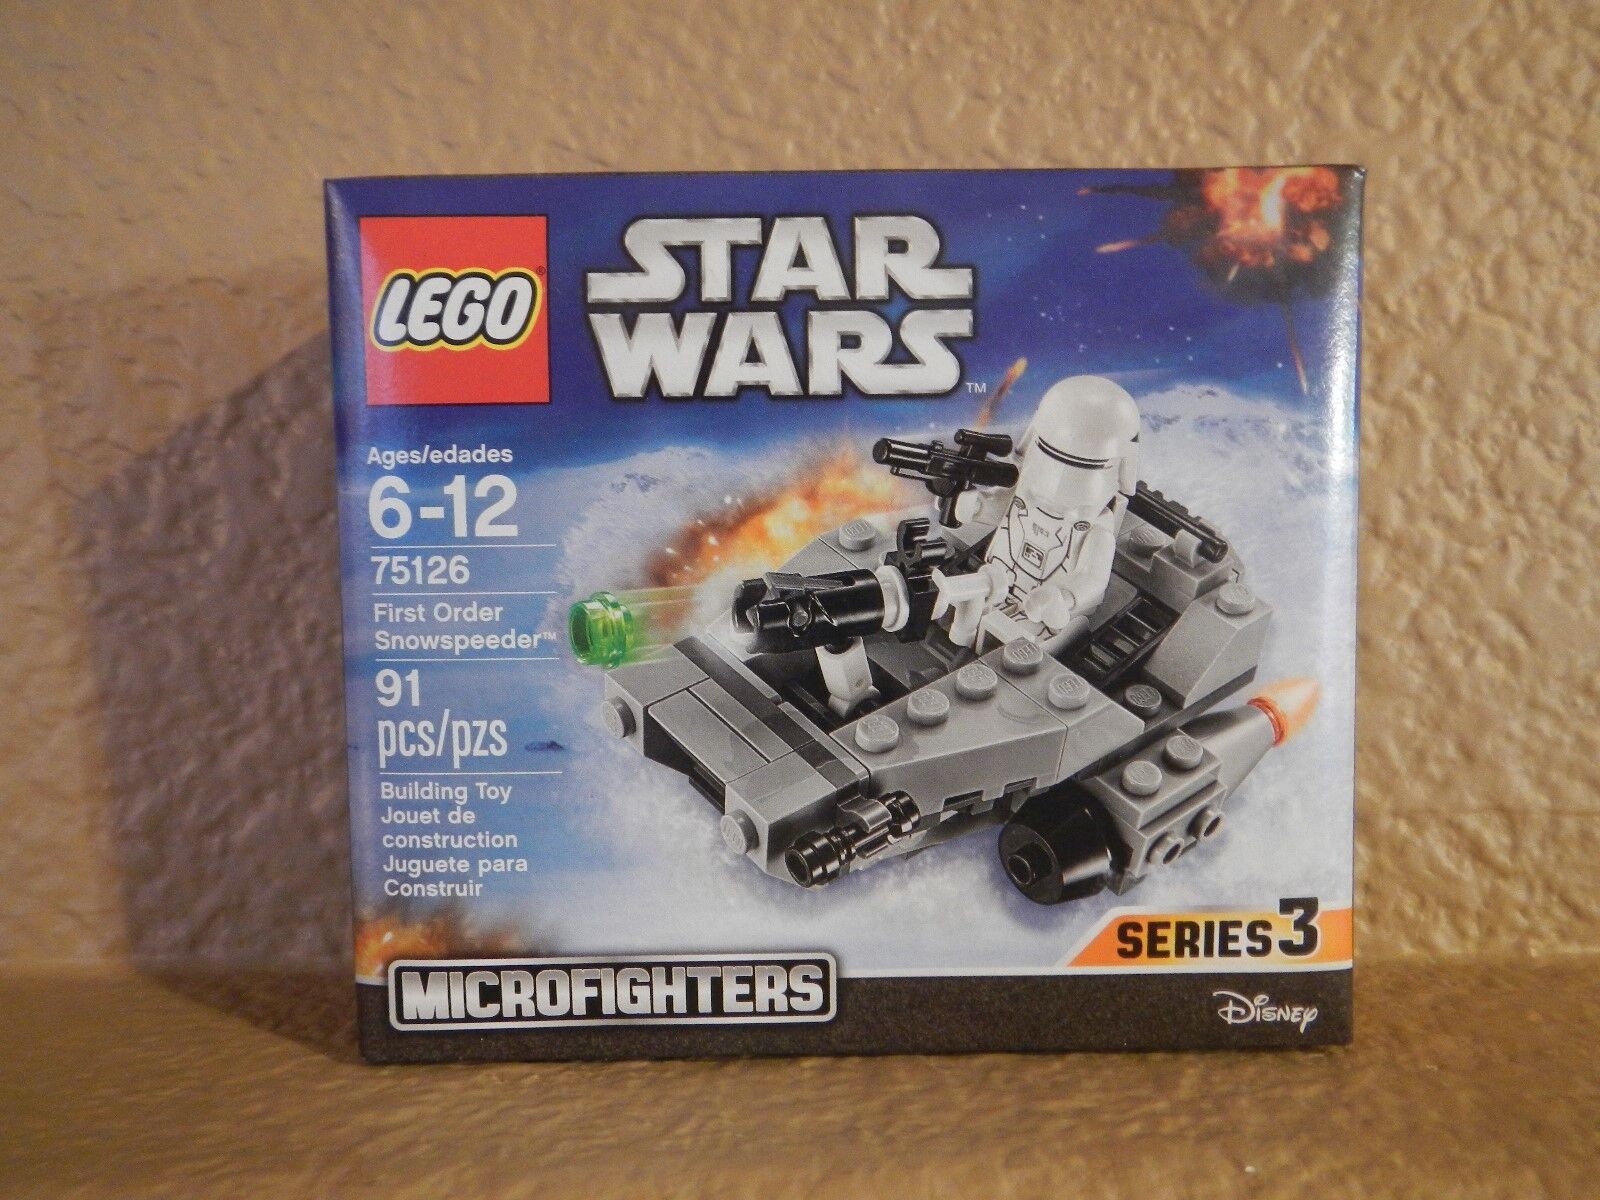  LEGO - Star Wars  MicroFighters Series 3 # 75126 - First Order Snowspeeder